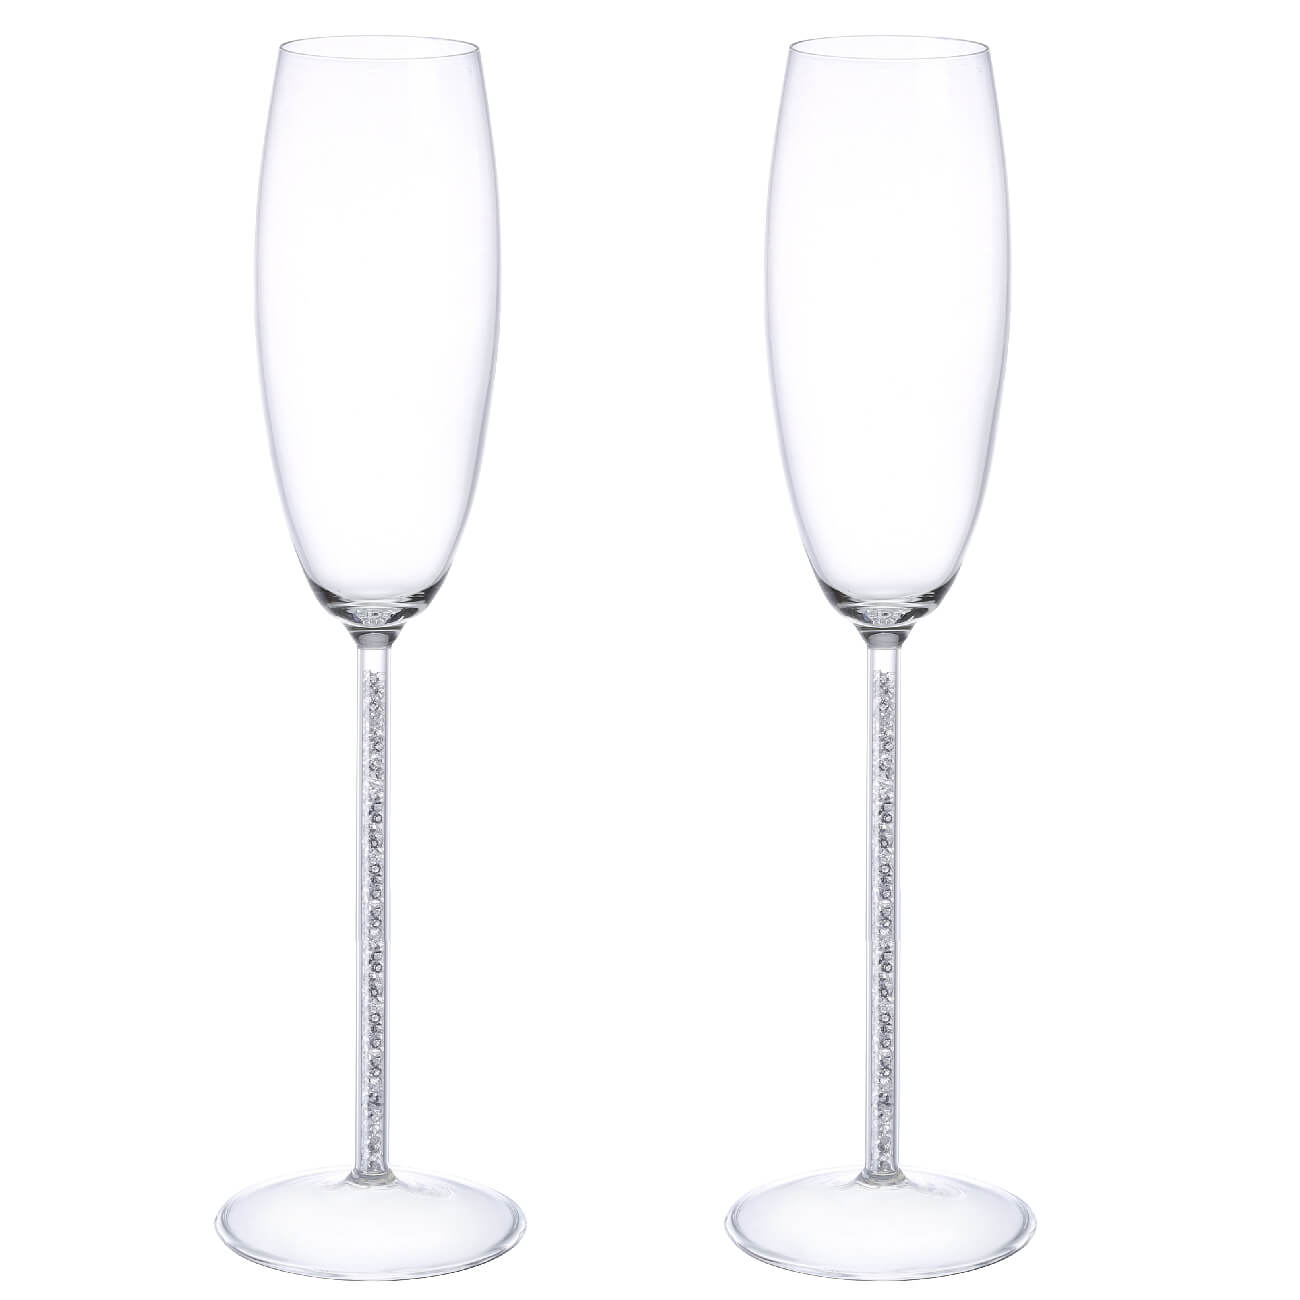 Kuchenland Бокал для шампанского, 180 мл, 2 шт, стекло/стразы, Crystal decor стразы для декора 3 мм разно ная голография